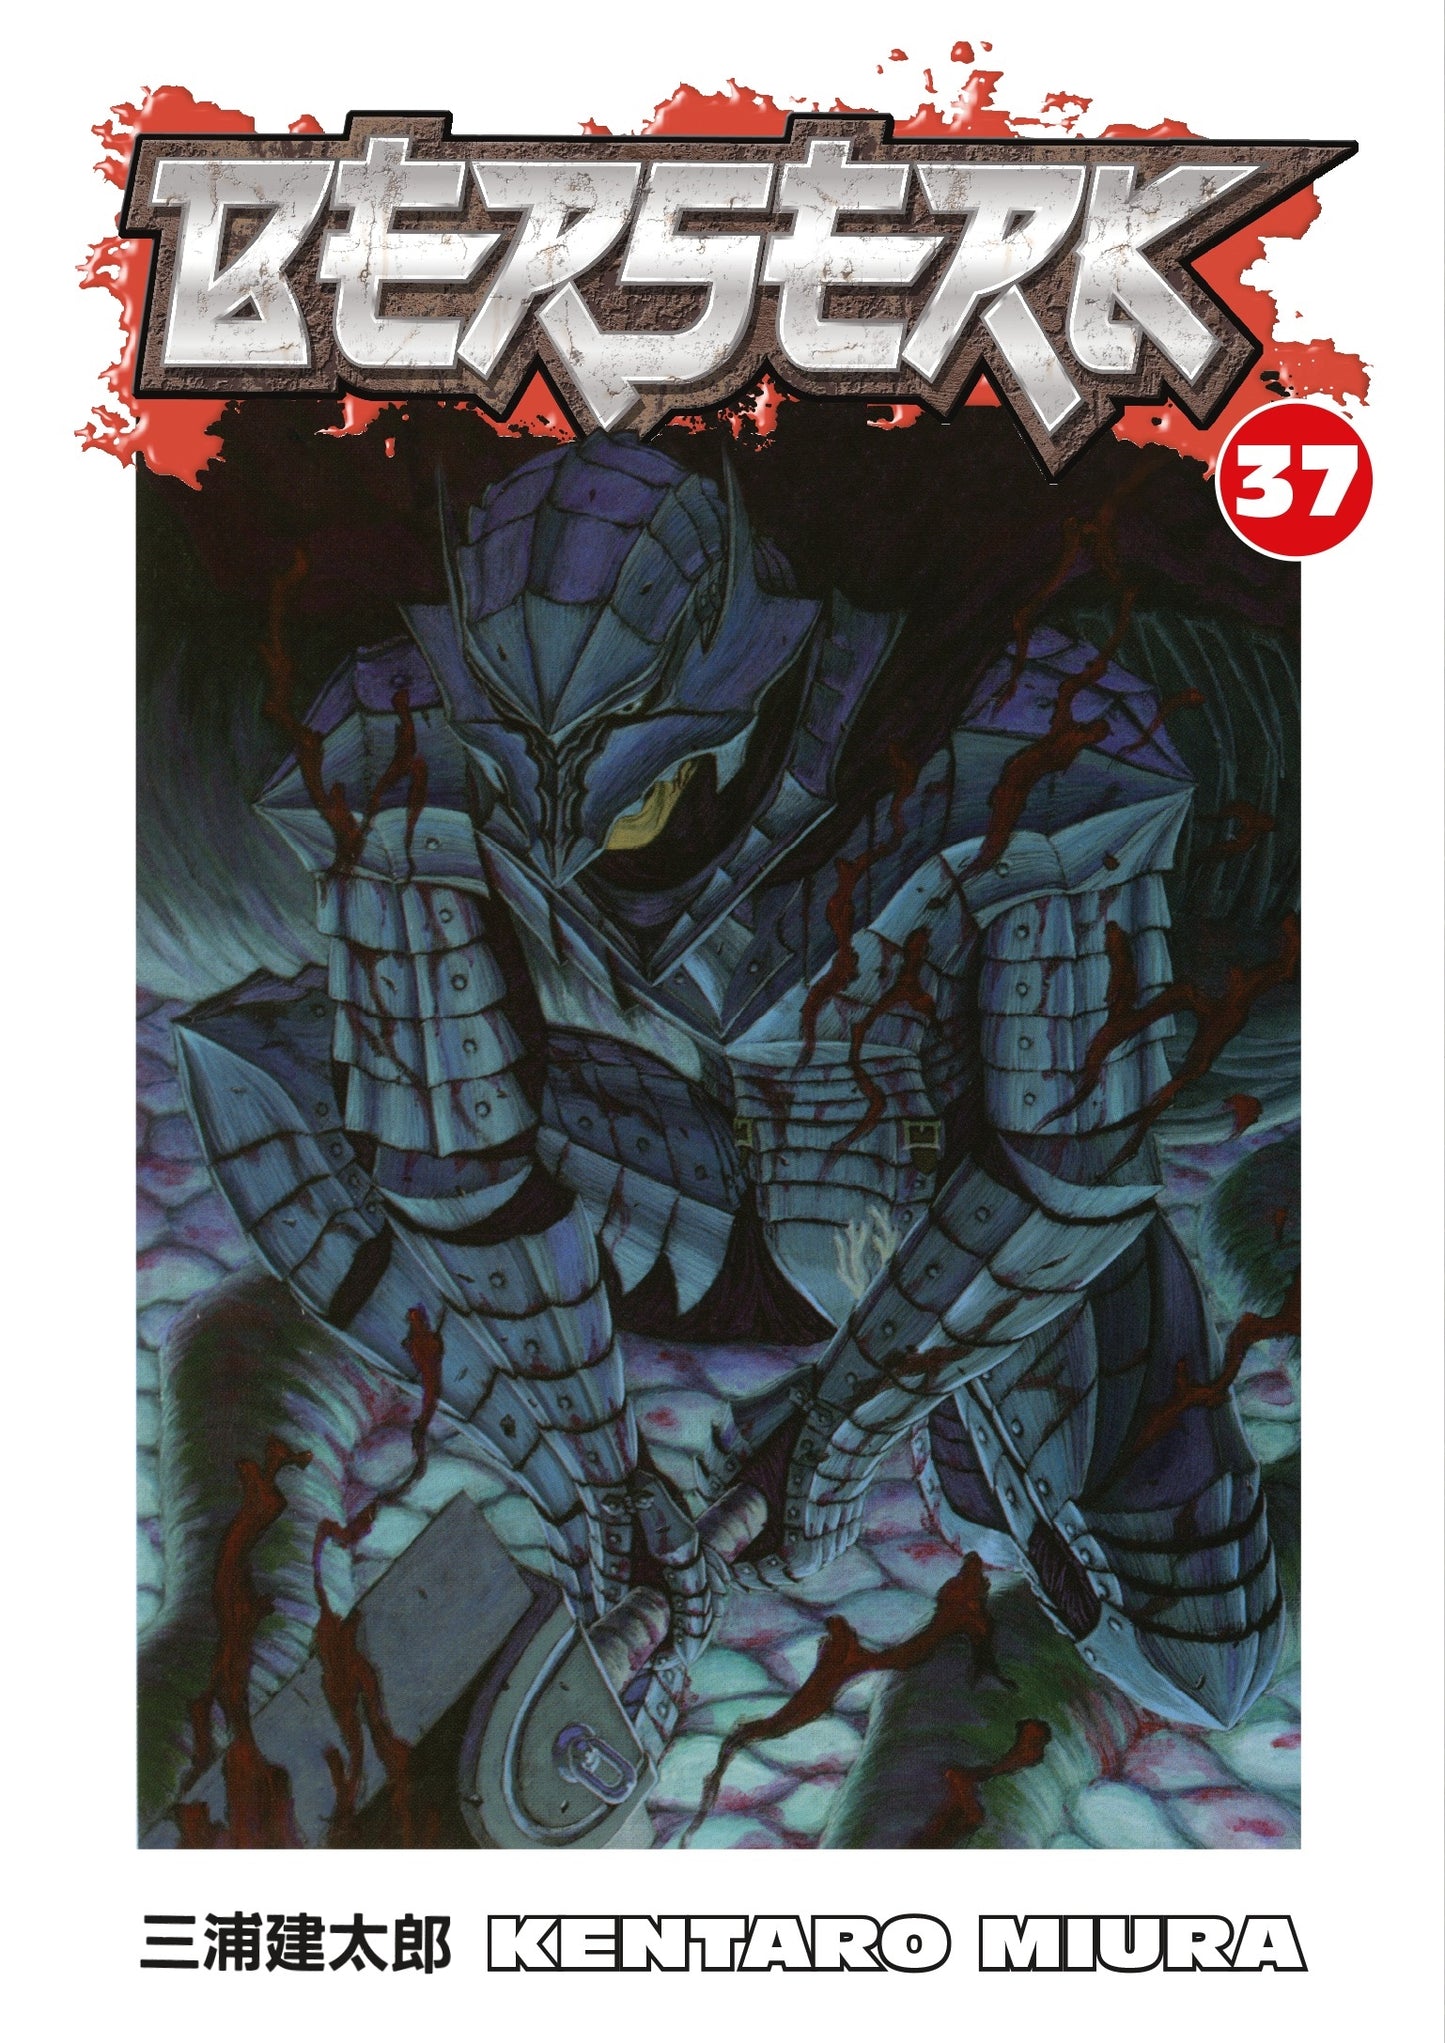 Berserk Volume 37 - Manga Warehouse